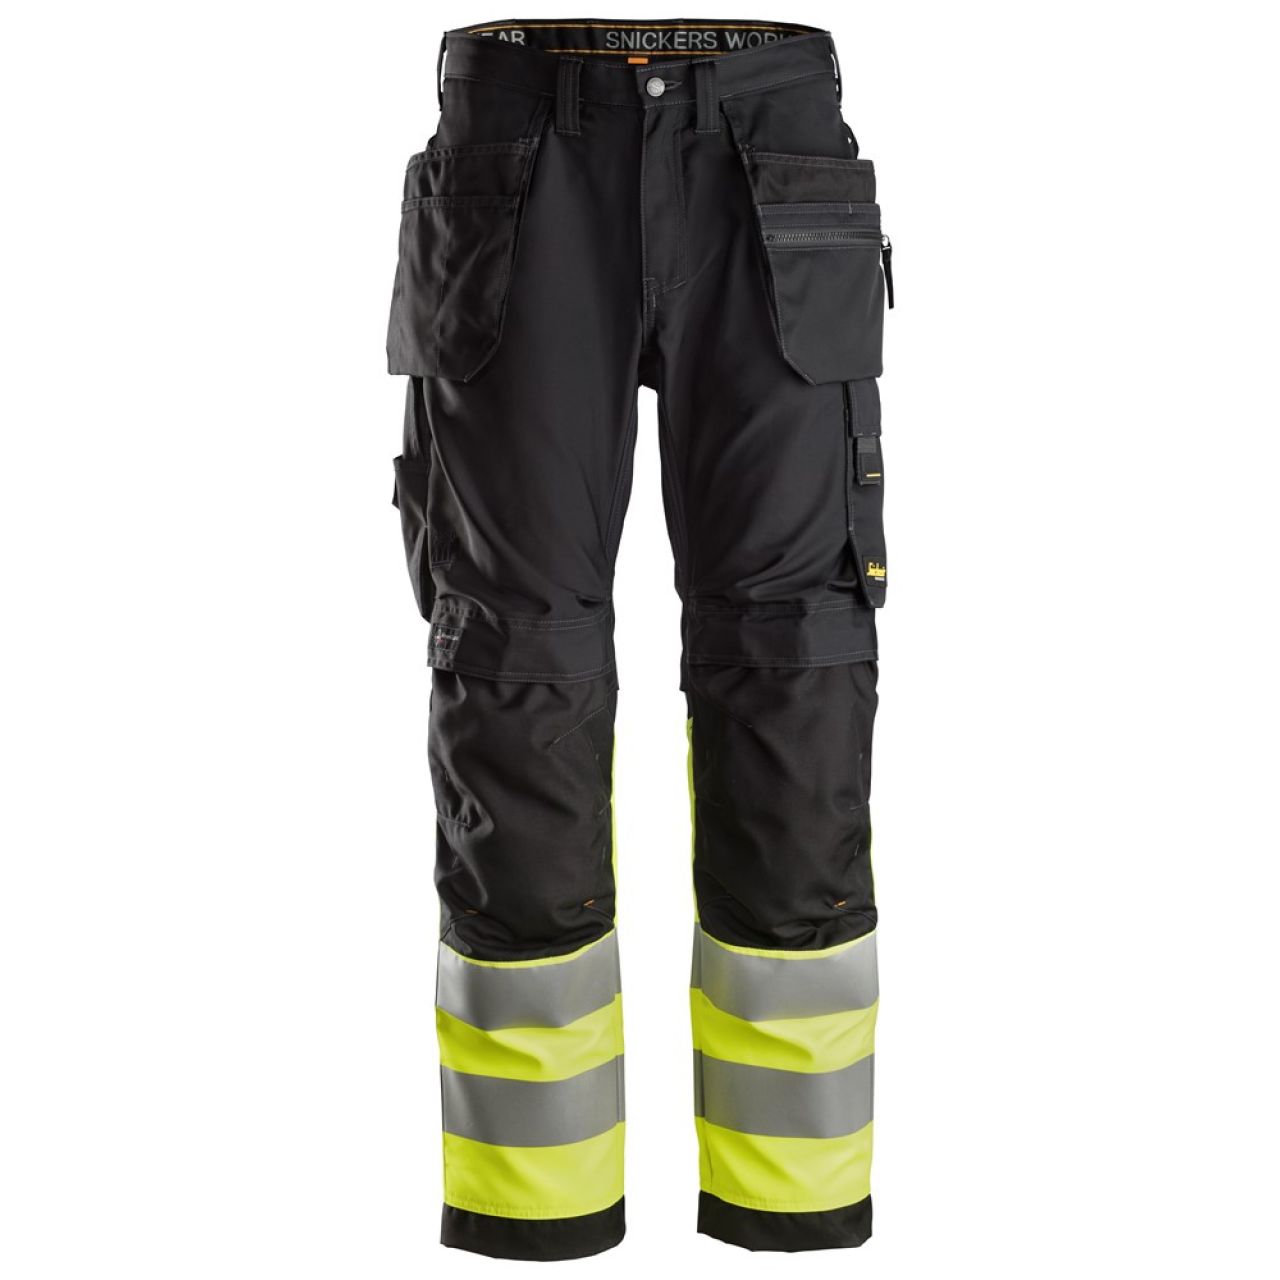 6233 Pantalones largos de trabajo de alta visibilidad clase 1 con bolsillos flotantes AllroundWork negro-amarillo talla 88